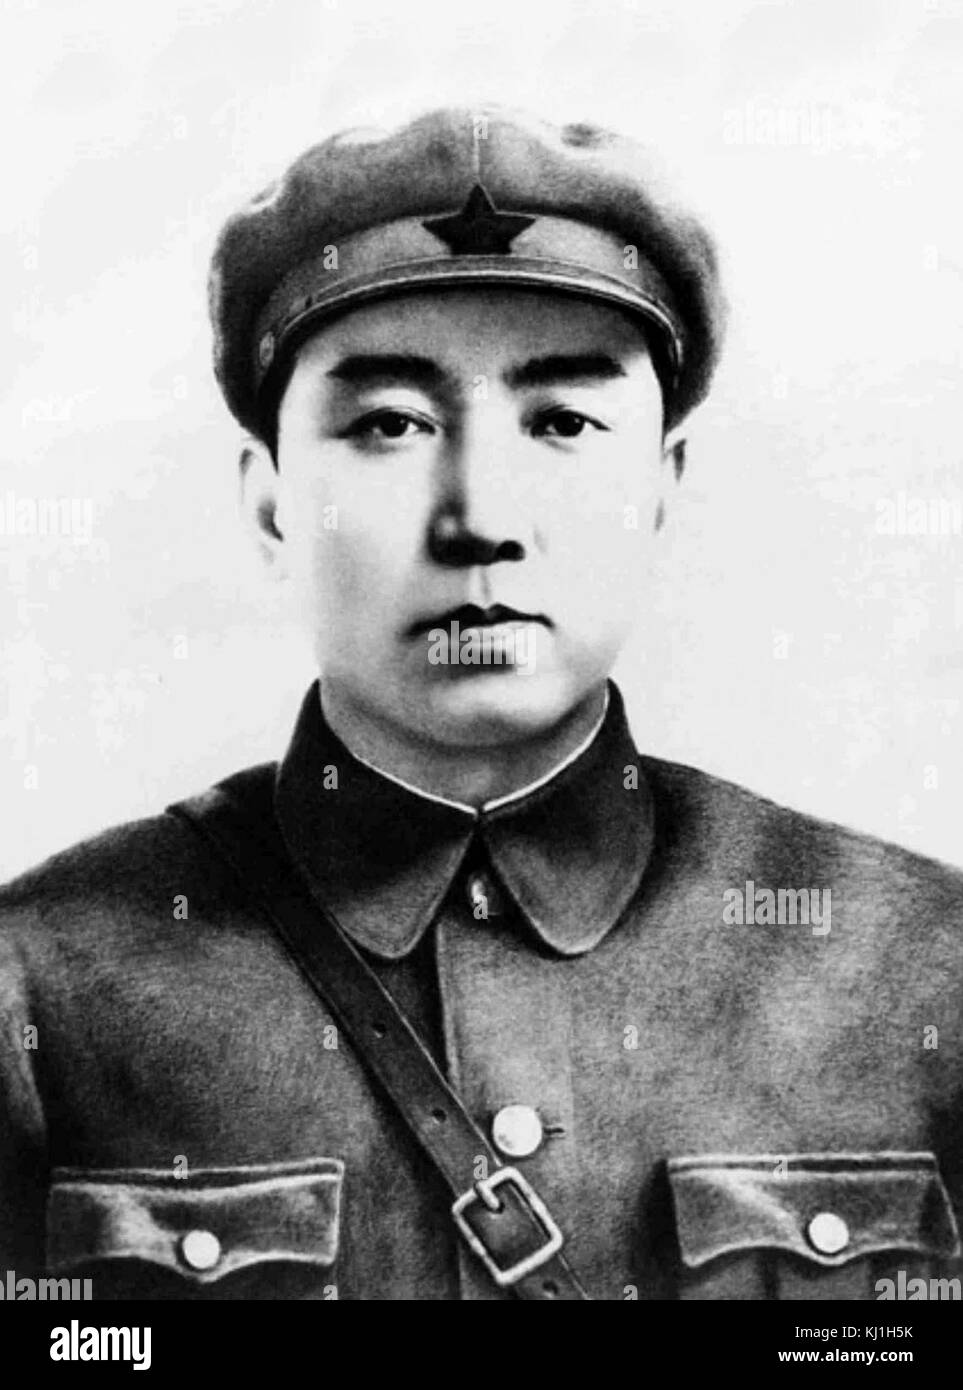 Kim Il Sung (1912 - 1994), è stato il leader supremo della Repubblica Popolare Democratica di Corea, a cui viene comunemente fatto riferimento come la Corea del Nord, per 46 anni, dalla sua creazione nel 1948 fino alla sua morte nel 1994 Foto Stock